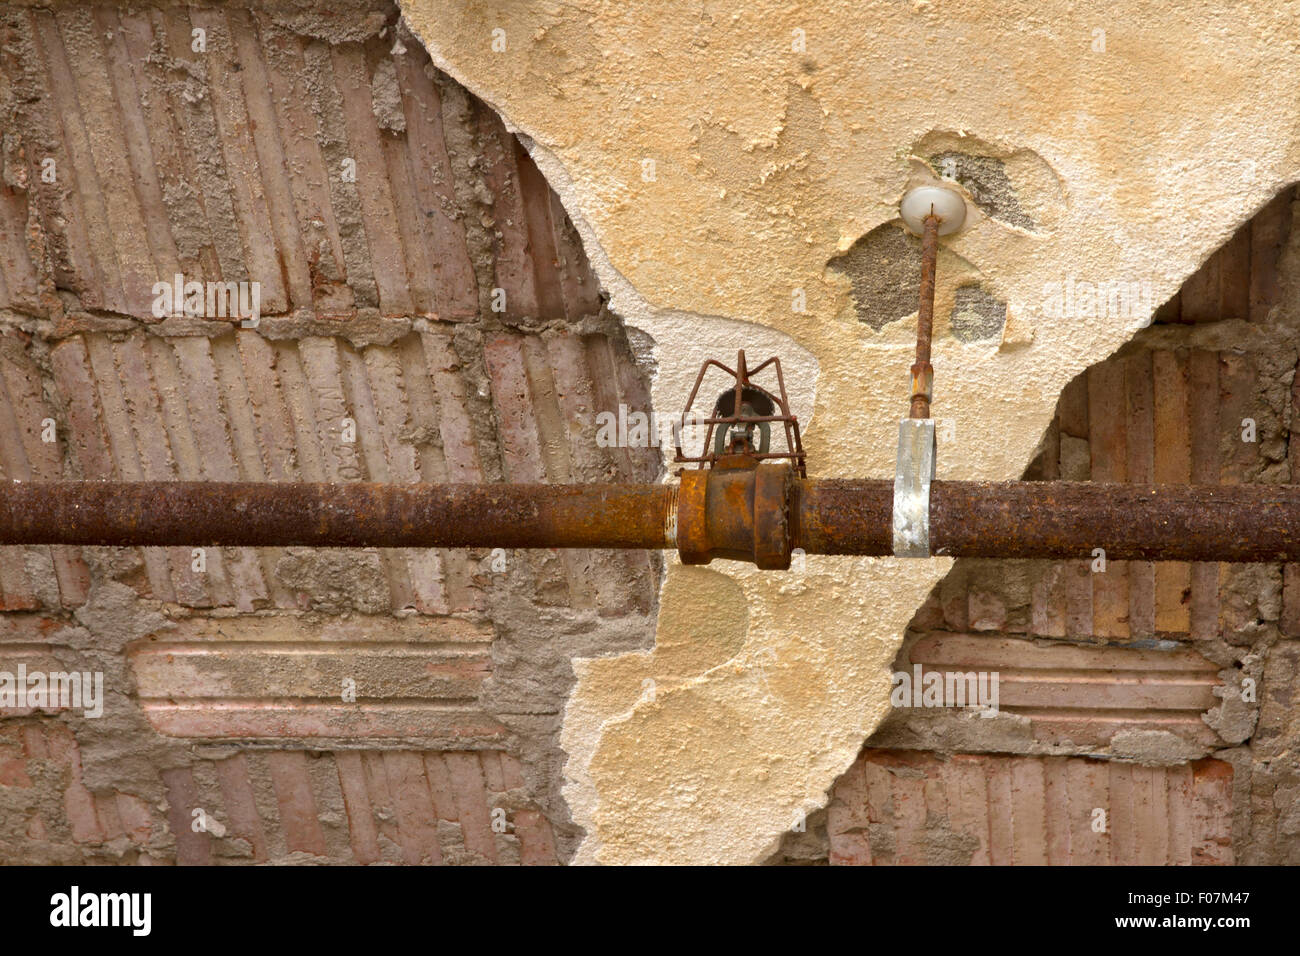 Auf alten rostigen Sprinklerkopf geleitet in Decke eines verlassenen Gebäudes. Stockfoto